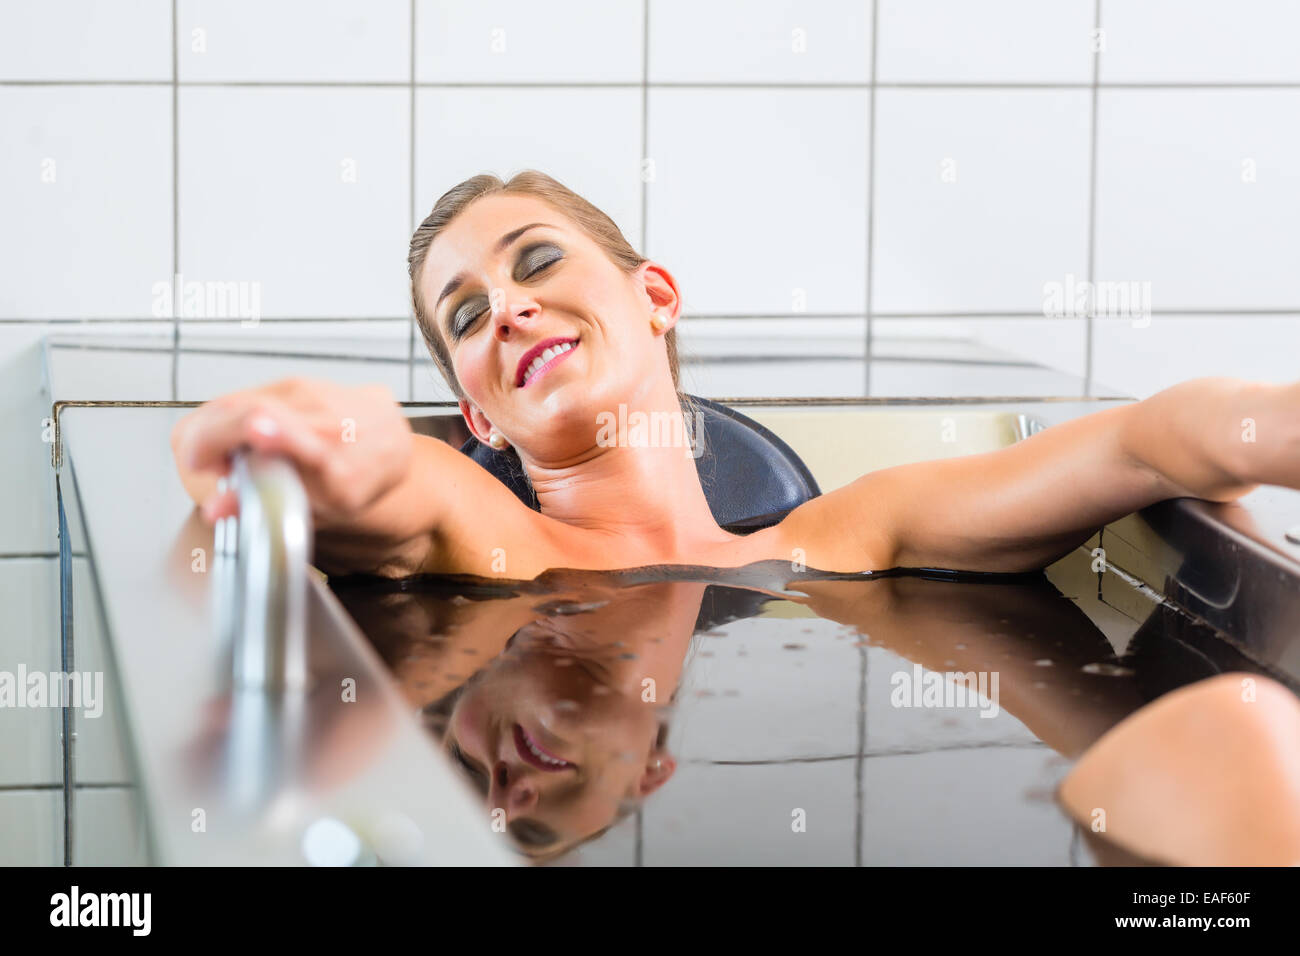 Mujer Senior disfrutar de baños de barro terapia alternativa Foto de stock